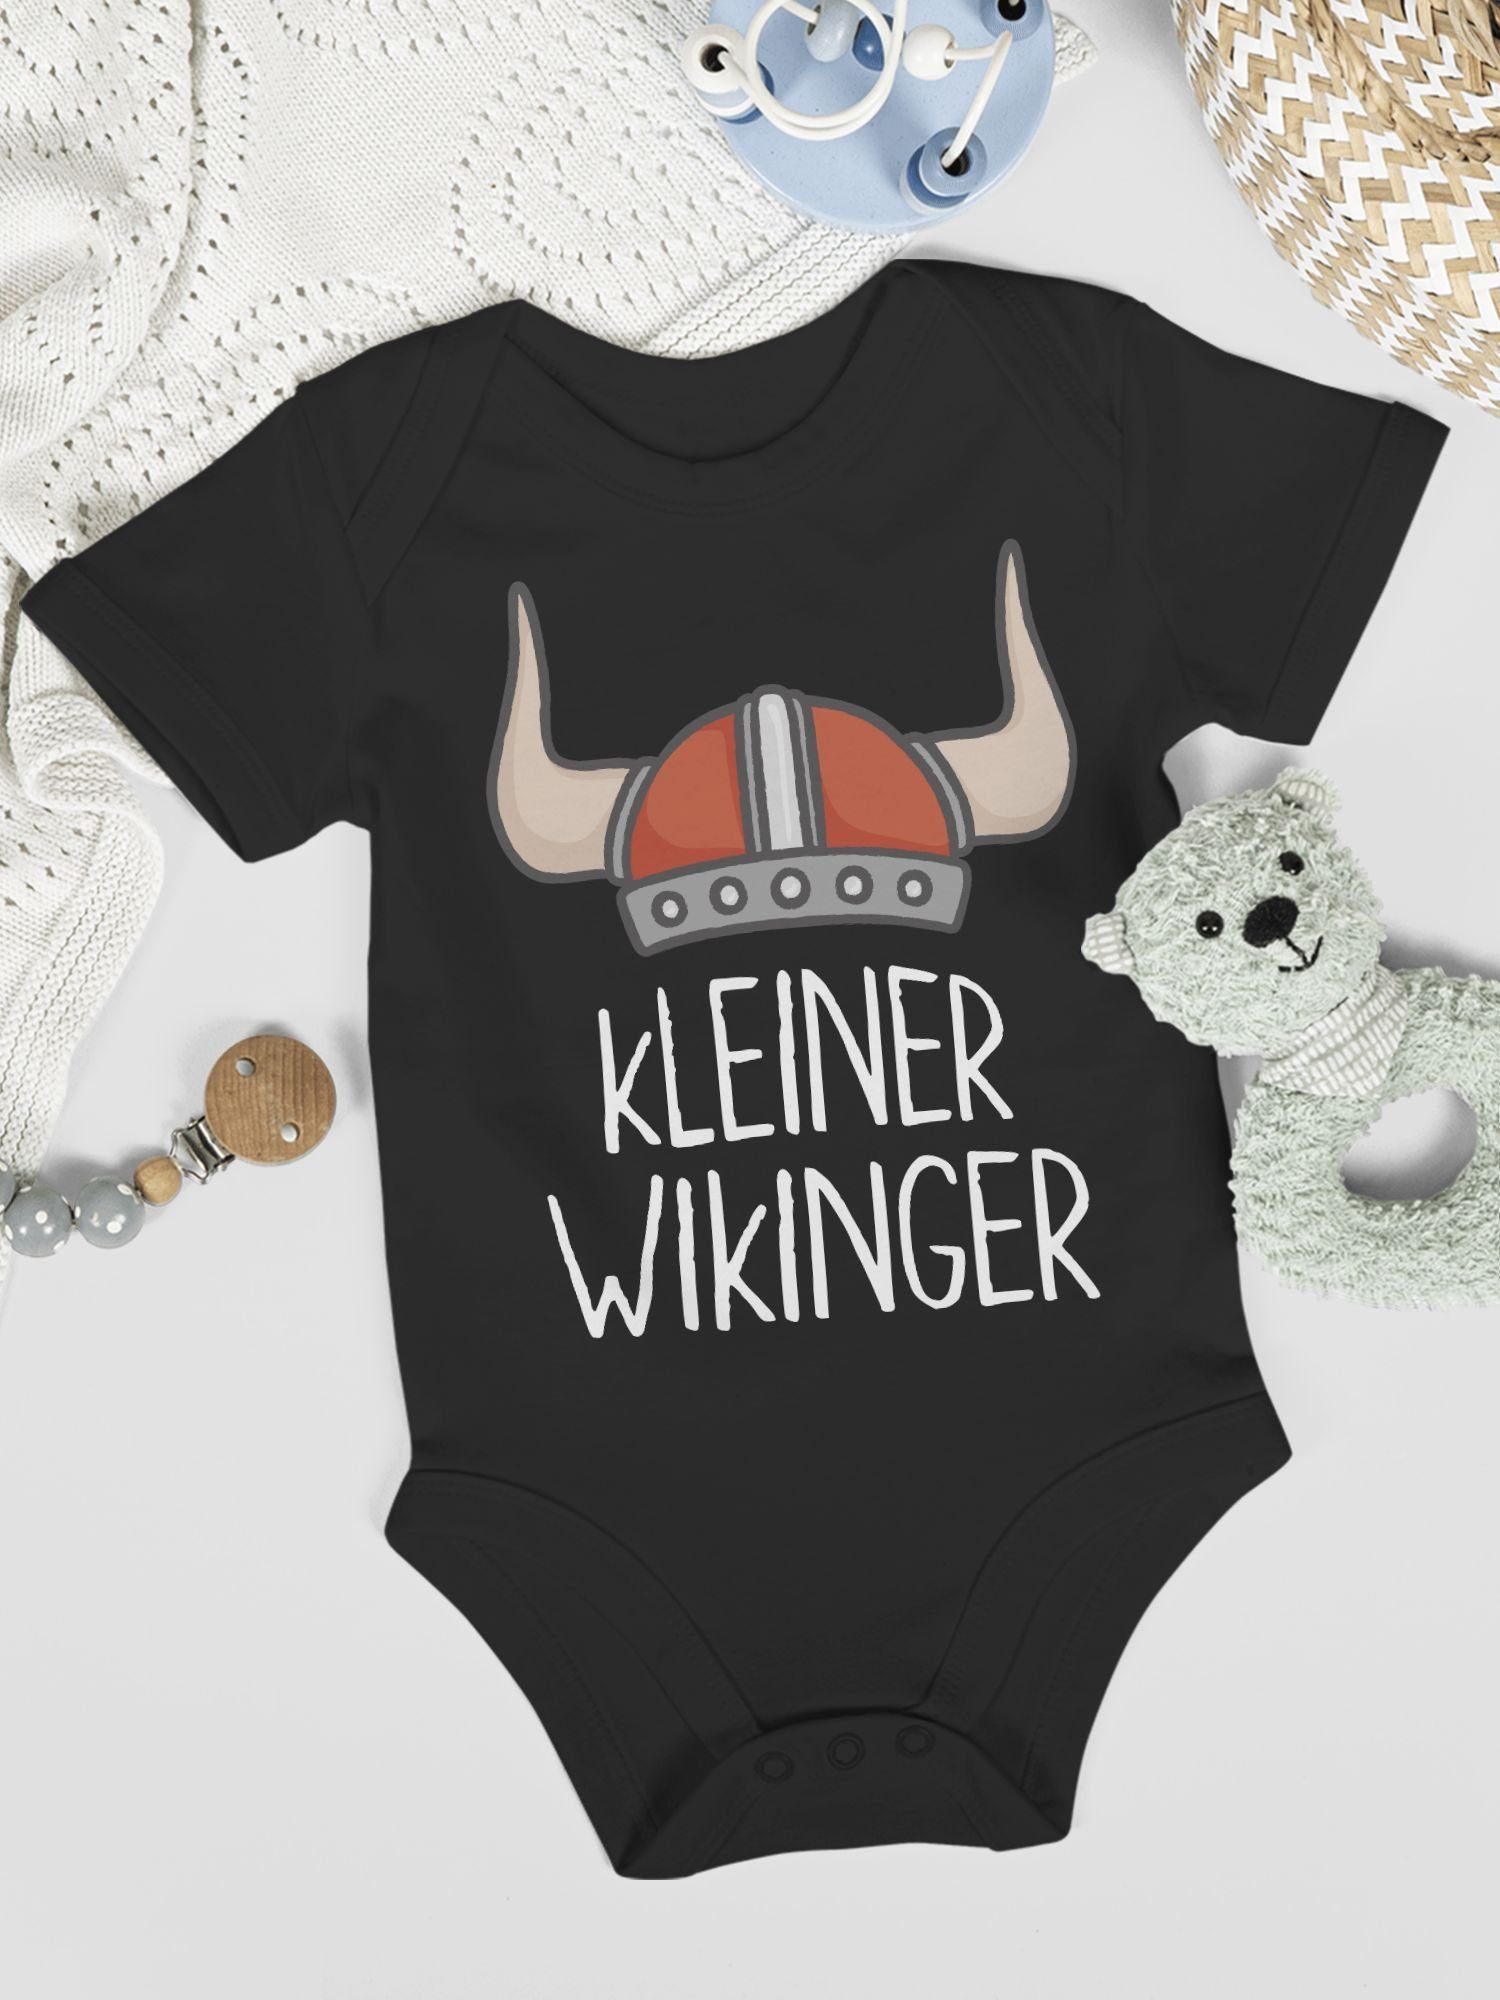 Shirtracer Wikinger Wikinger & Shirtbody Walhalla kleiner 1 weiß Schwarz Baby